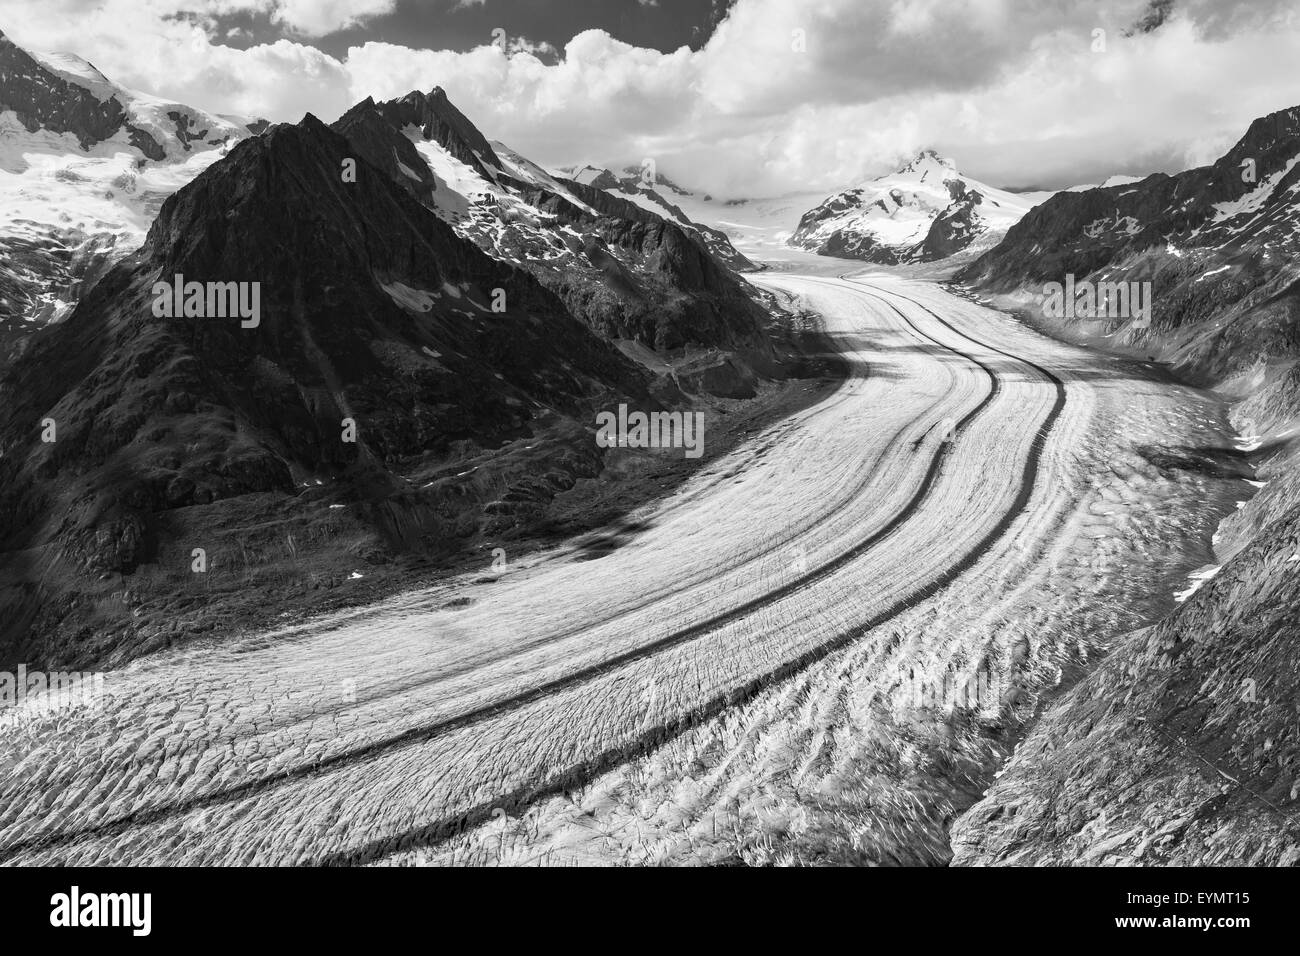 Der Aletschgletscher. Aletschgletscher. Die Ostbernischen Alpen im Schweizer Kanton Wallis. Schweiz. Schwarz-weiße Berglandschaft Stockfoto